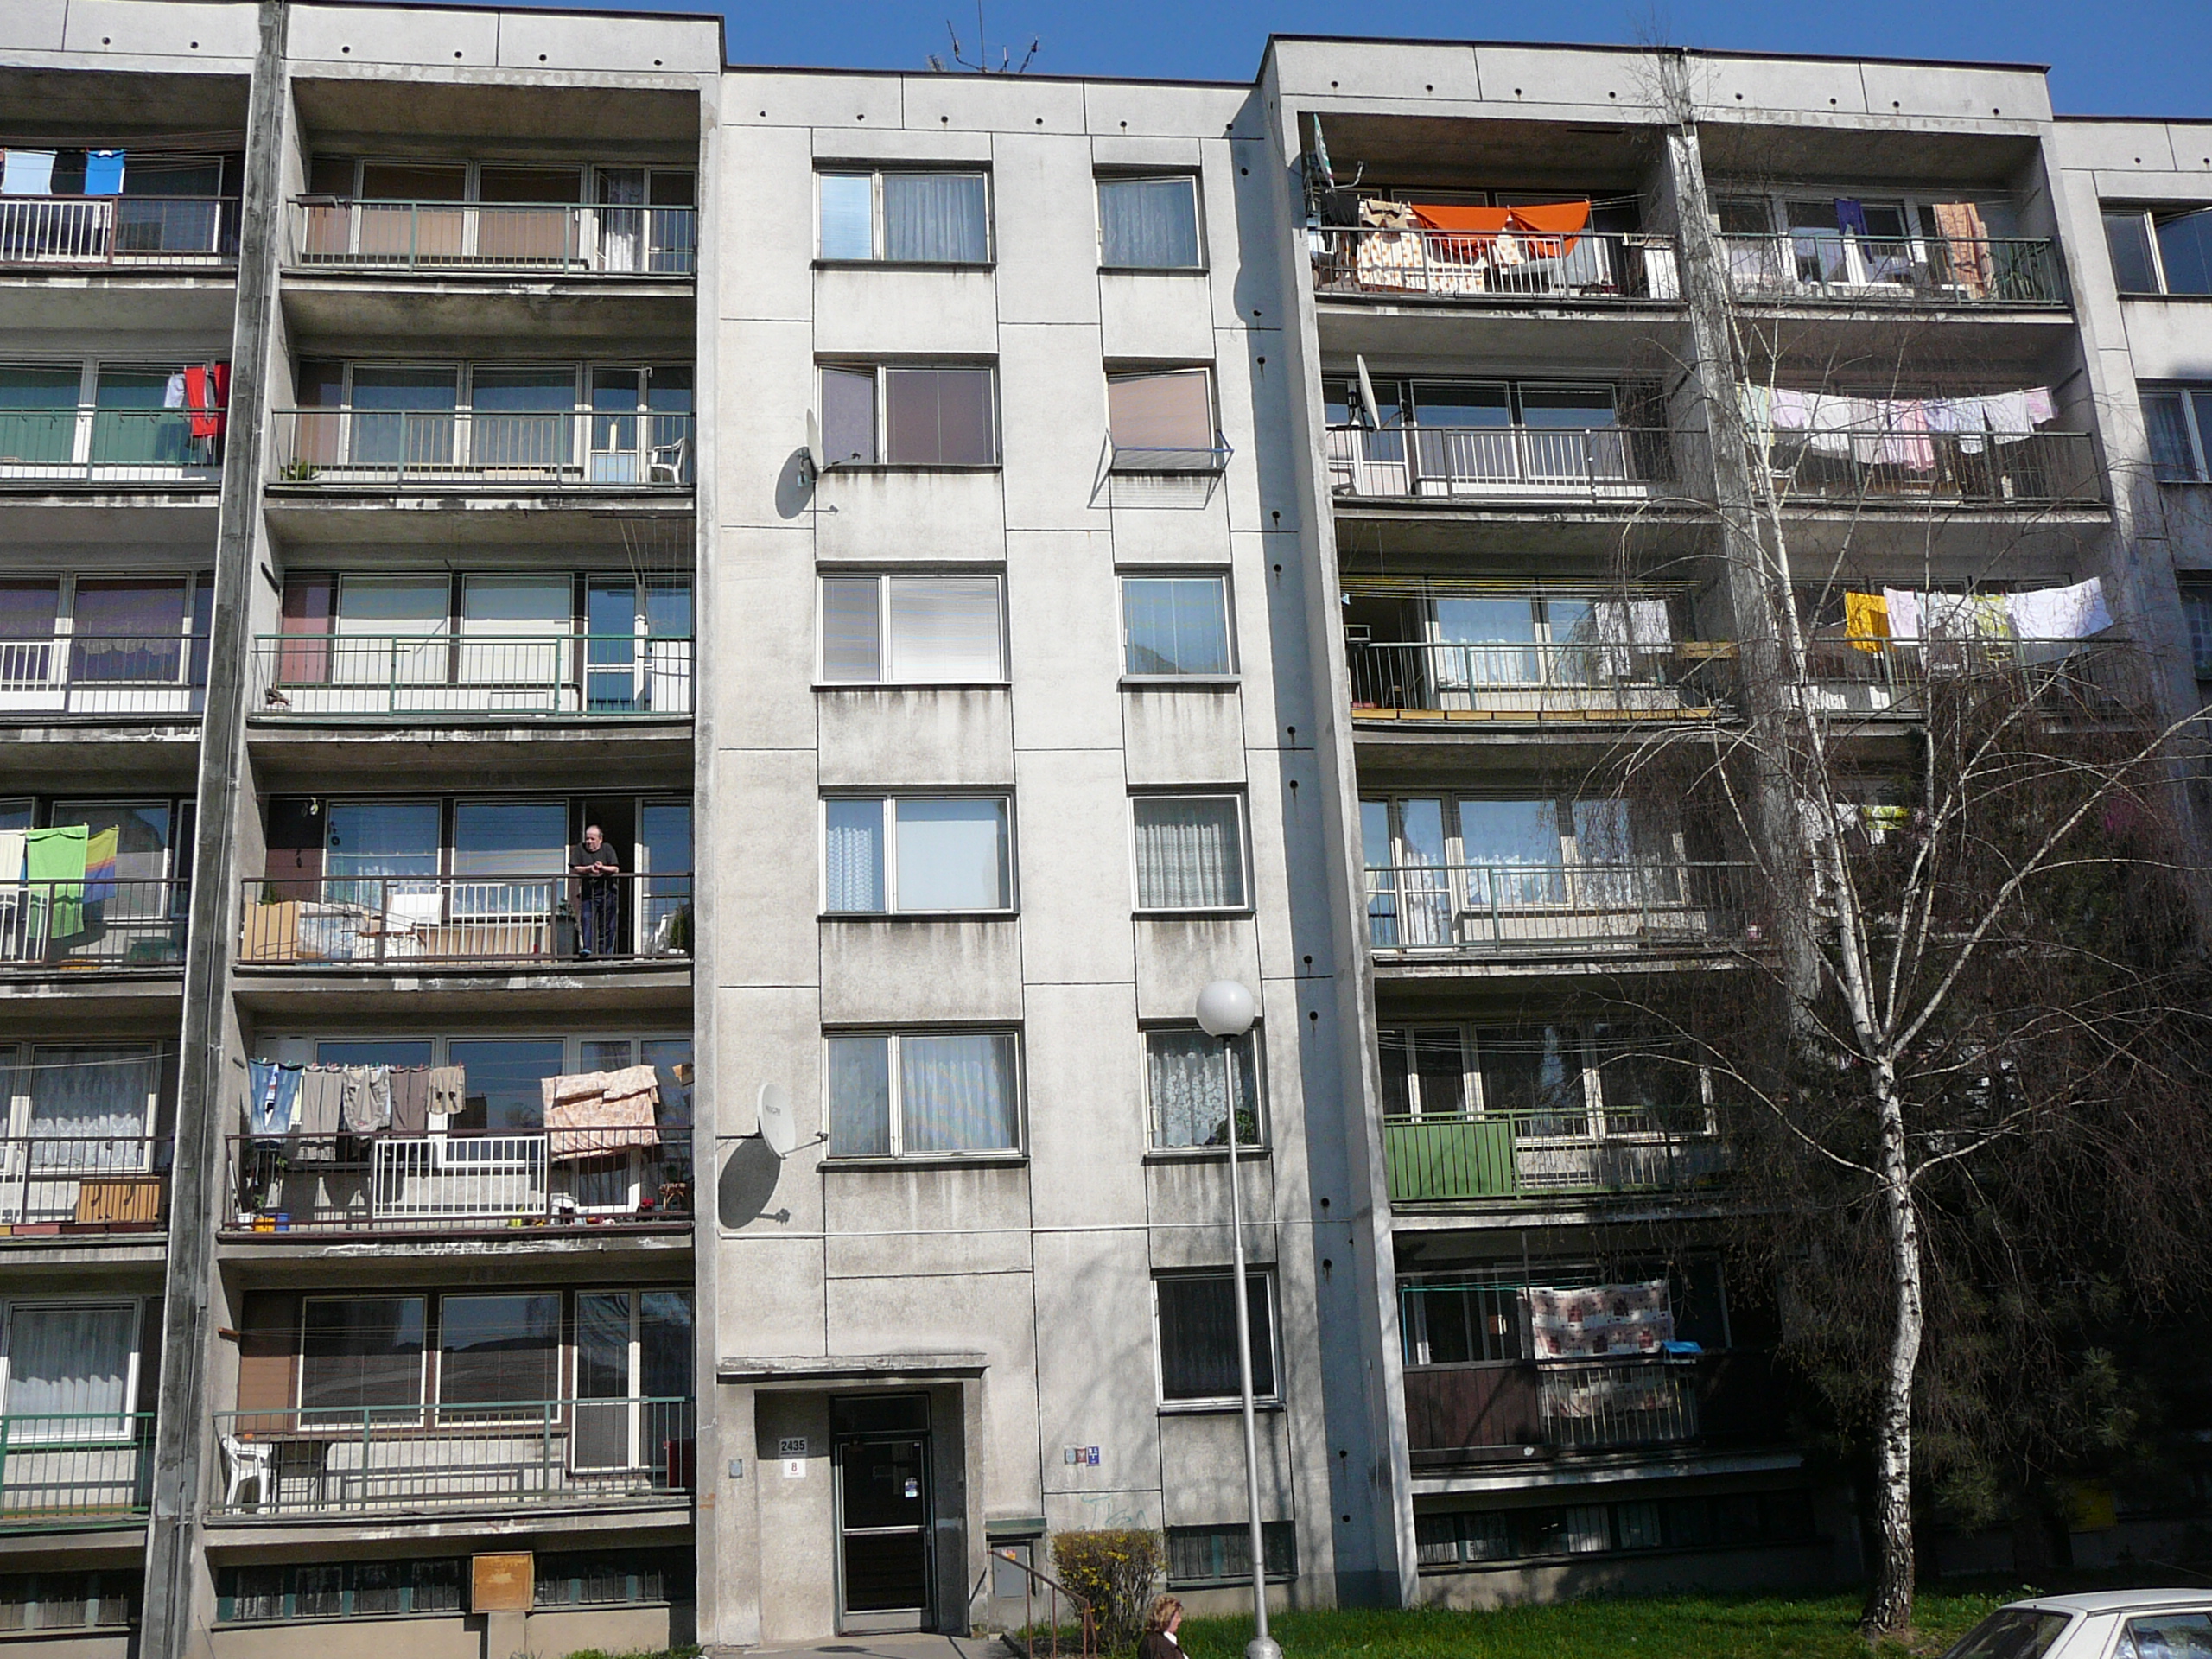 Dům před rekonstrukcí v roce 2007.P1000543.JPG